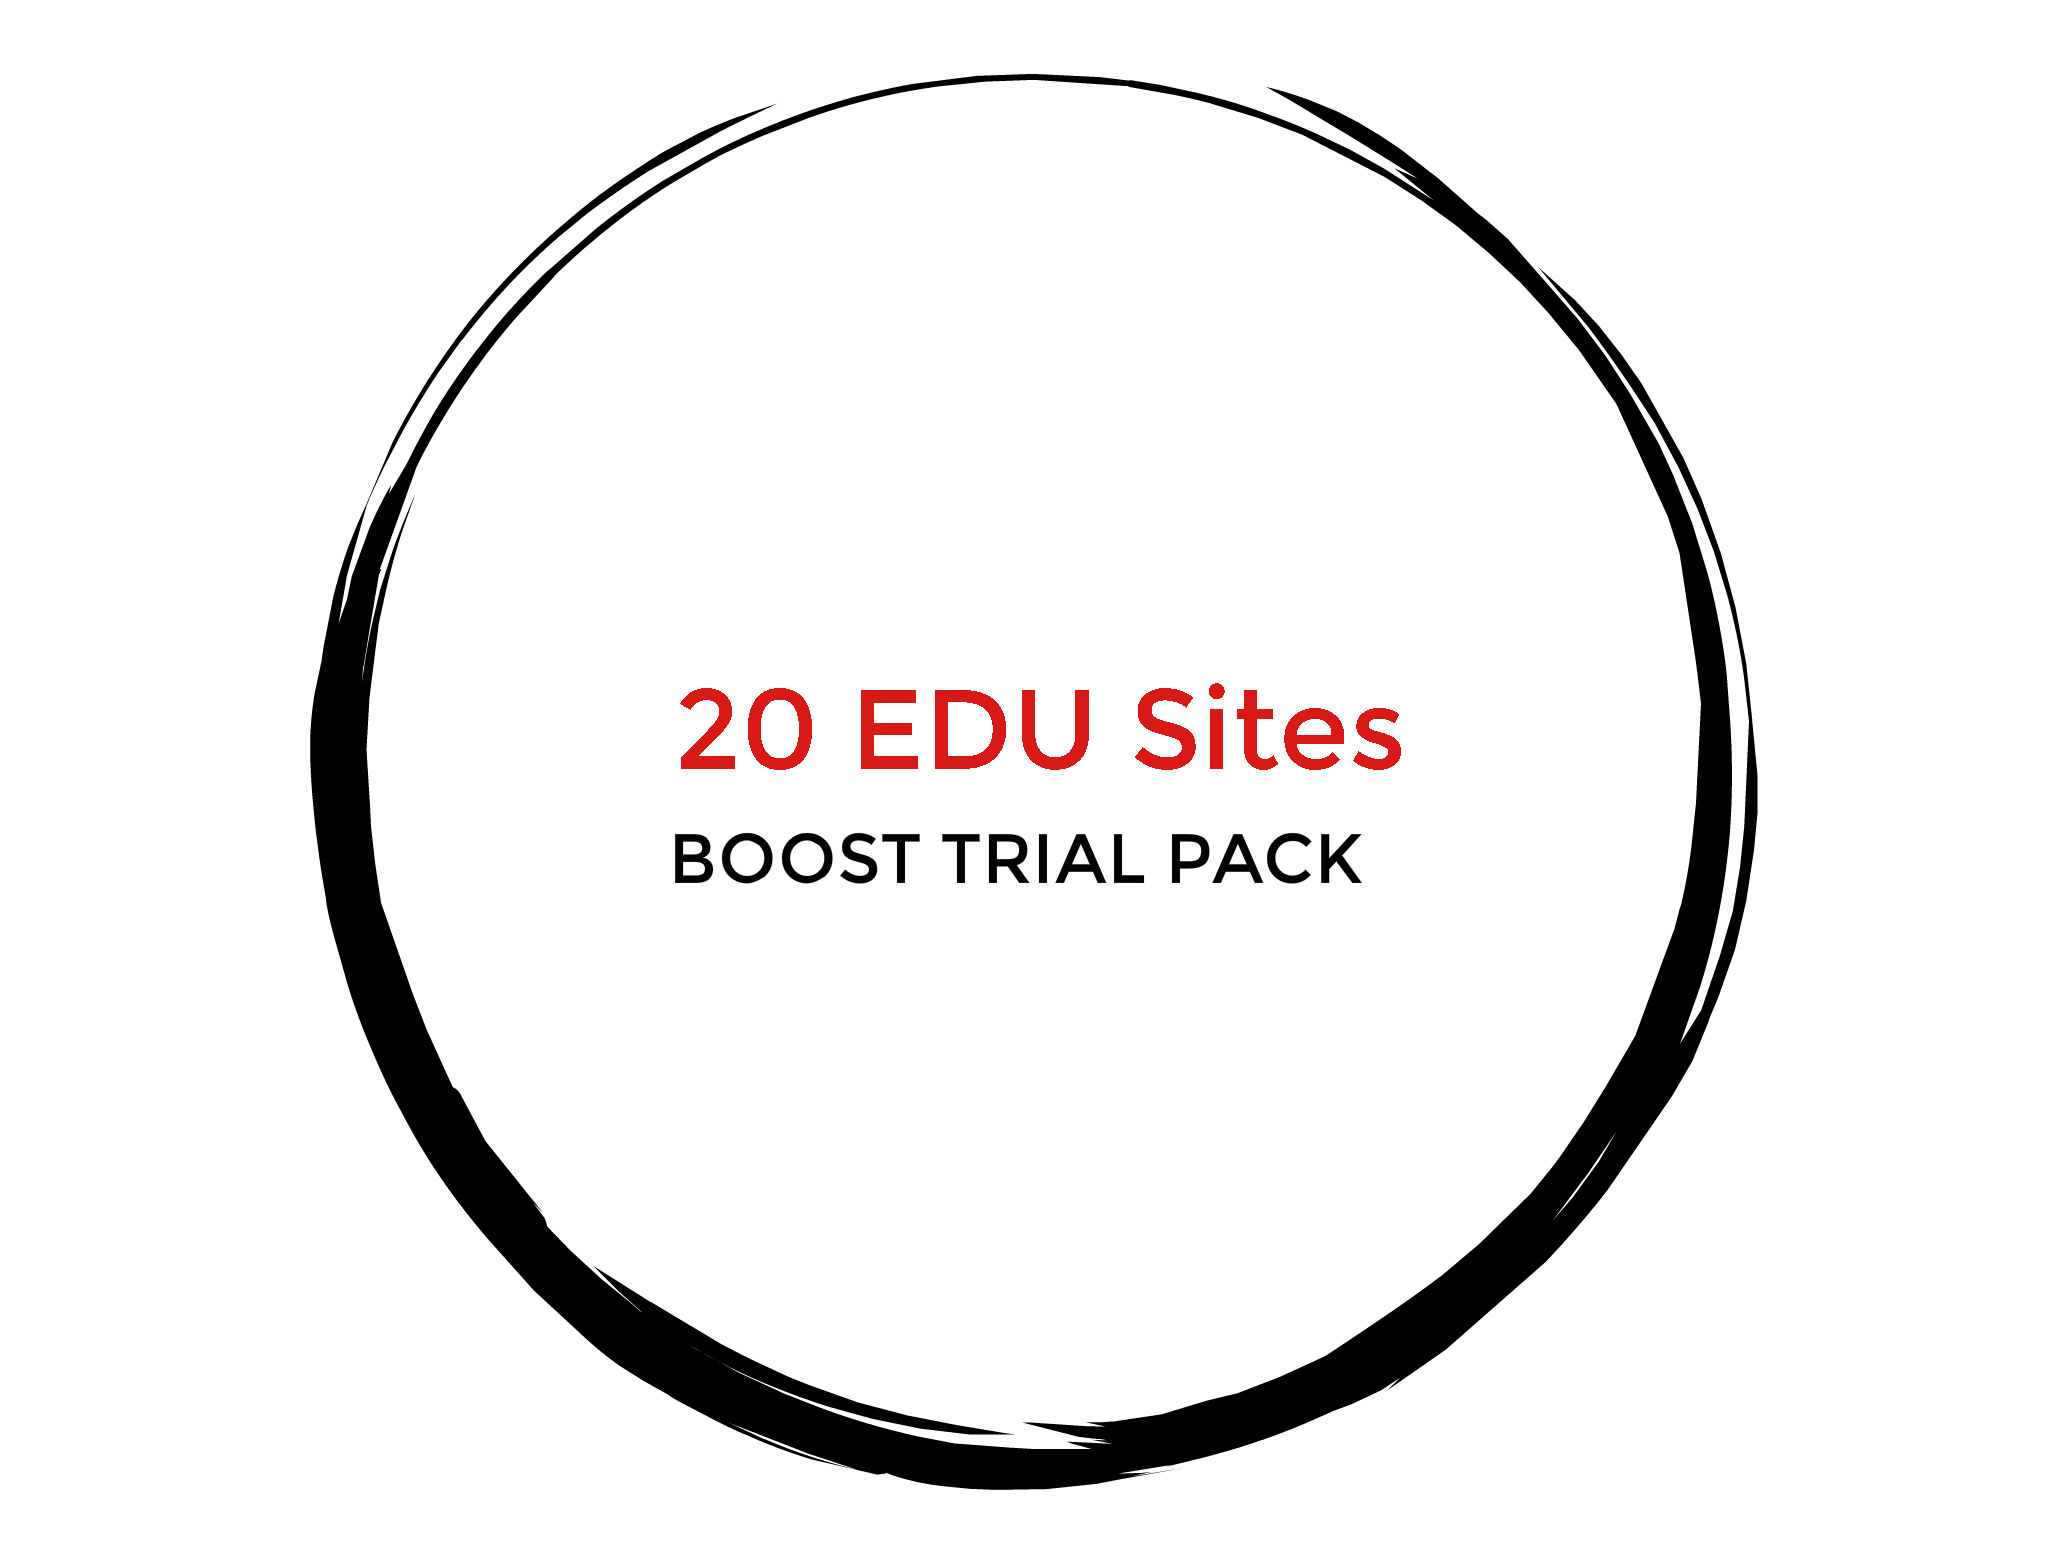 20 EDU Sites - Boost Trial Pack